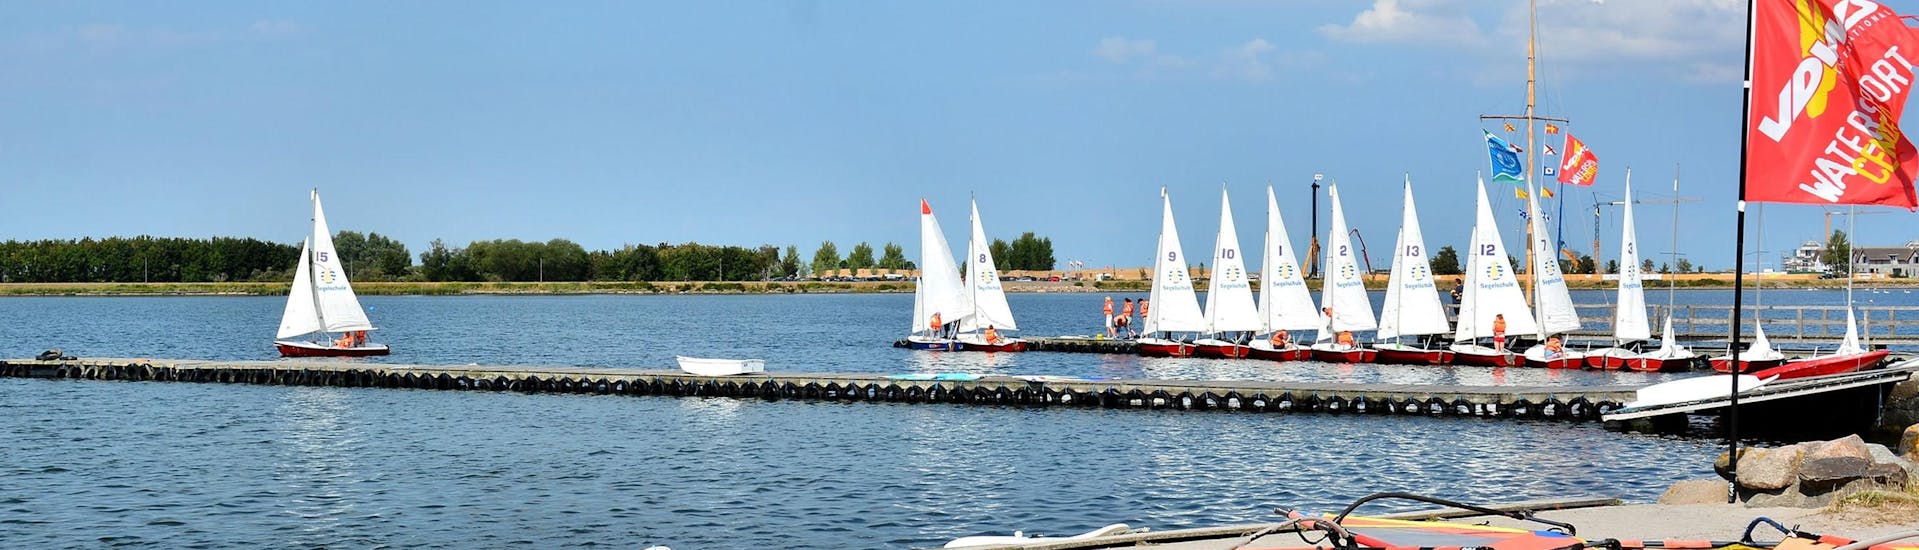 Ein Blick auf den See mit mehreren Booten während des Windsurfingkurses für Fortgeschrittene - Heiligenhafen mit dem Wassersportcenter Heiligenhafen.